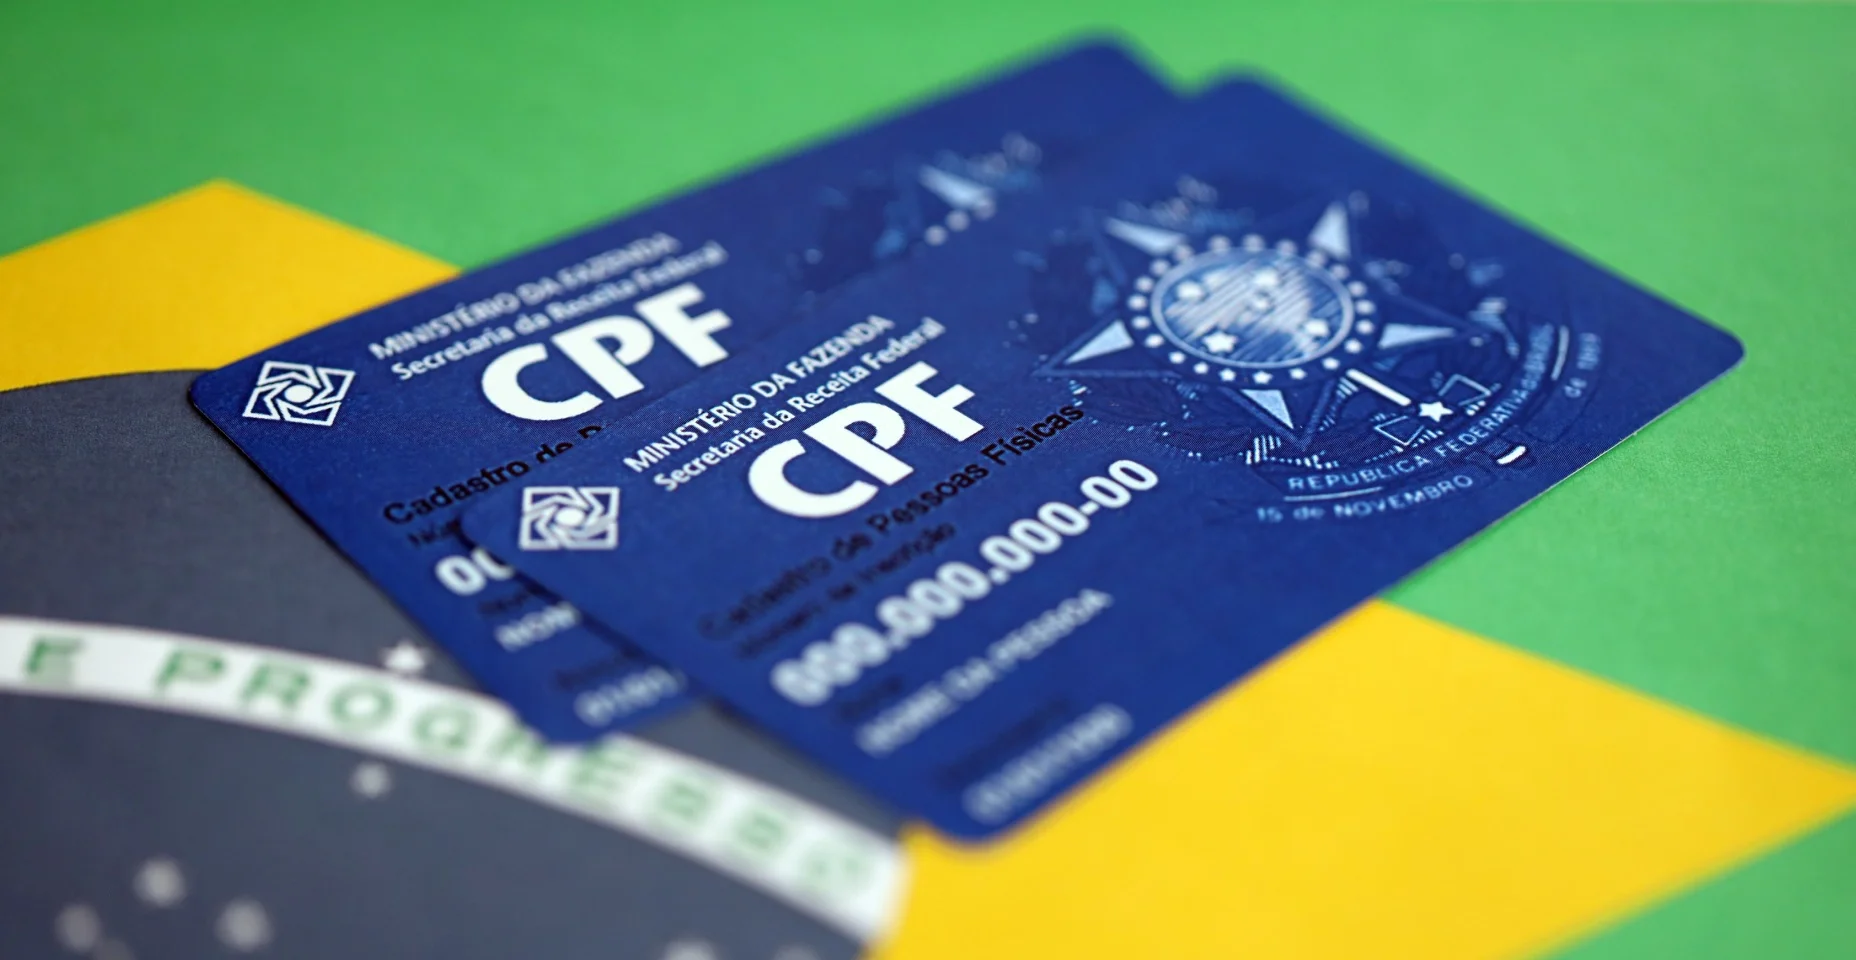 O documento garante autenticidade e integridade na comunicação eletrônica entre pessoas no Brasil. Cadastro de Pessoa Física